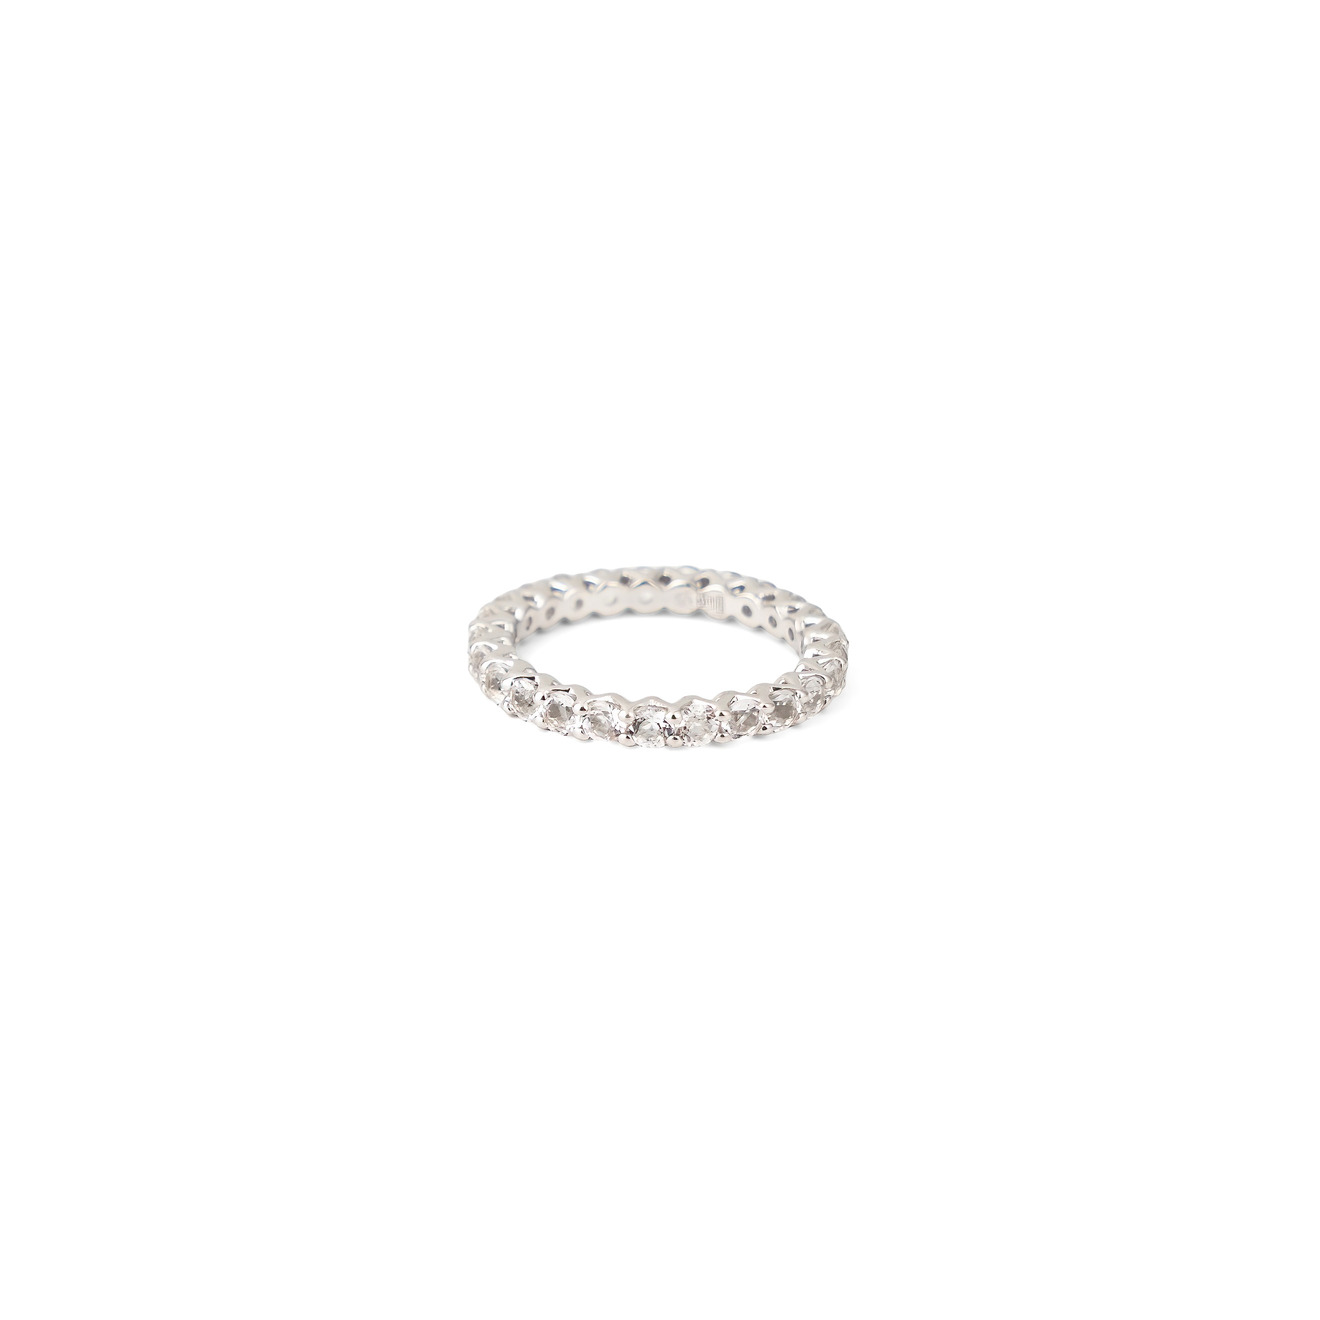 EKA KOMA Сверкающее кольцо великолепное женское кольцо квадратной формы сверкающее сверкающее свадебное кольцо с микро инкрустацией из кристалла и циркона свадебн